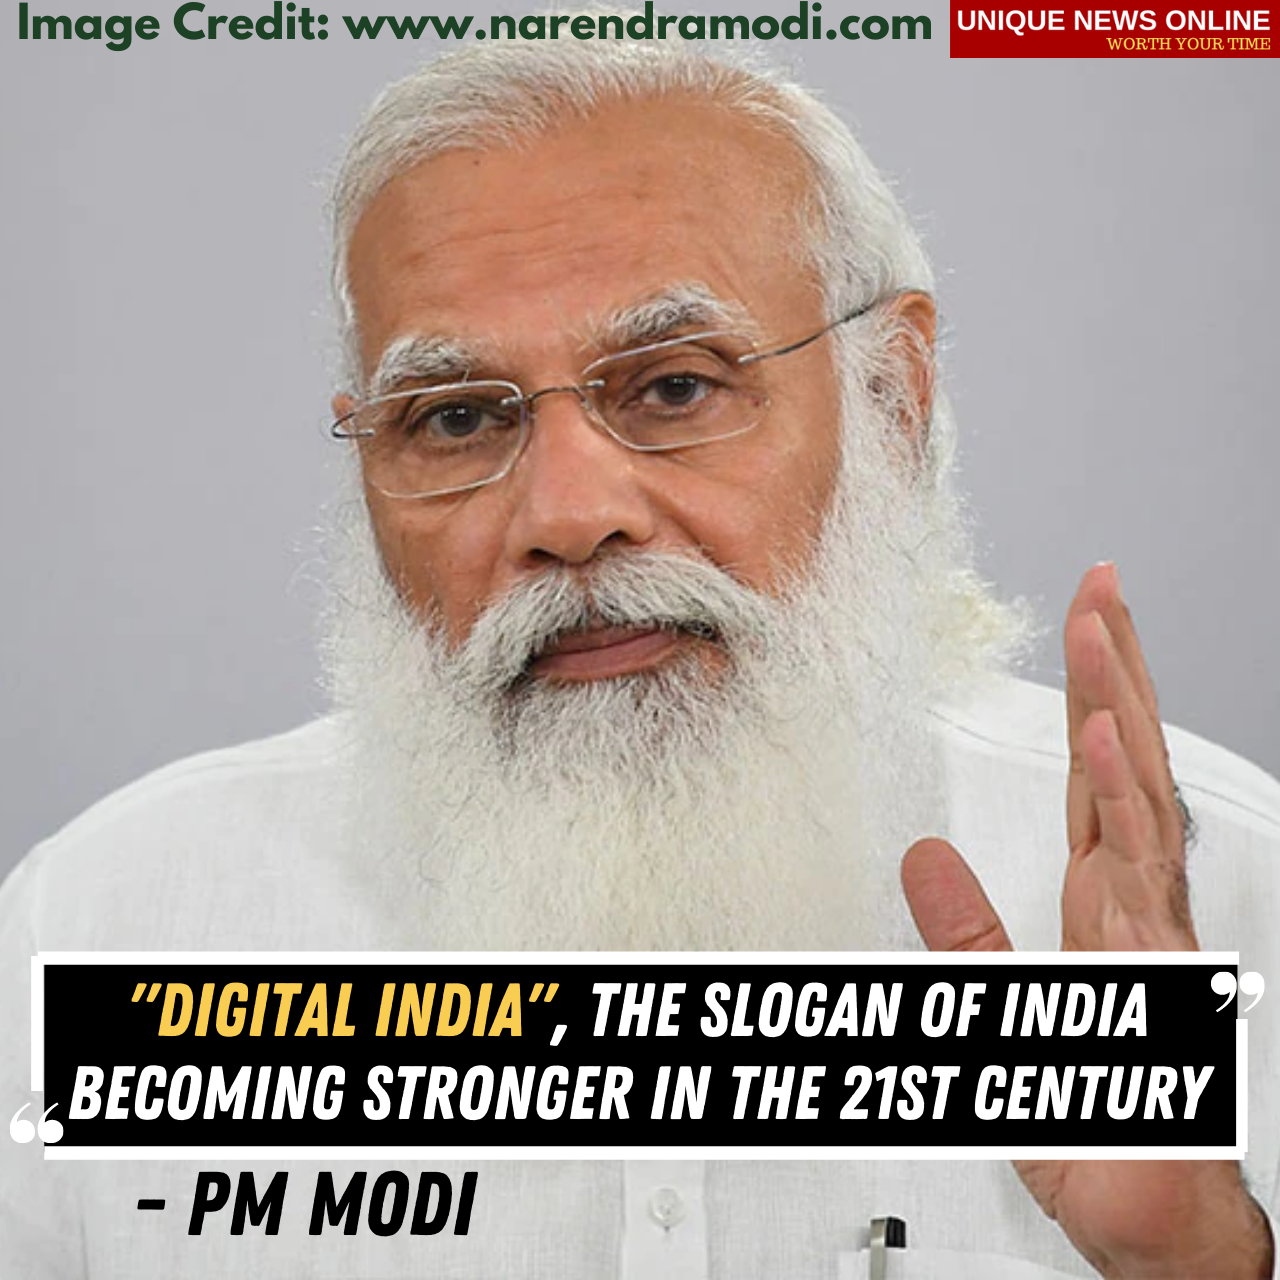 पीएम मोदी म्हणाले- डिजिटल इंडिया, 21 व्या शतकात भारताची बळकटीची घोषणा